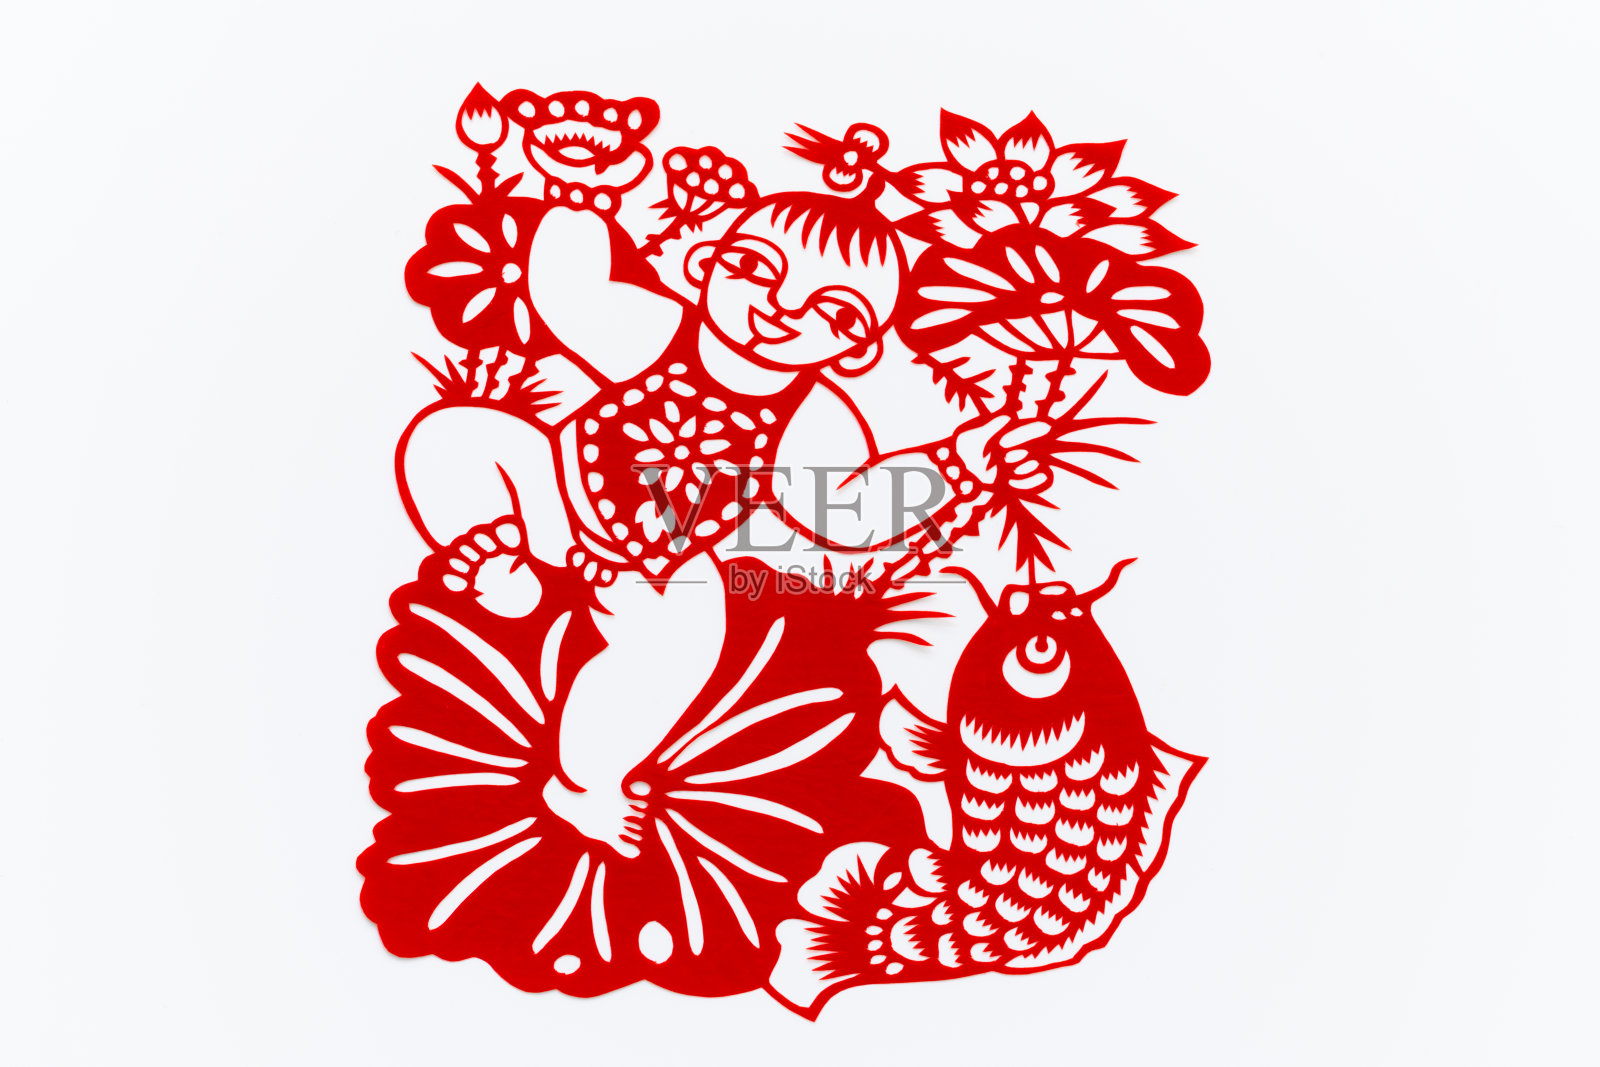 中国传统剪纸艺术图案、花窗。农历新年。象征着幸福和好运。中国吉祥元素。汉字翻译(祝福，长寿，和平，财富，丰饶)照片摄影图片